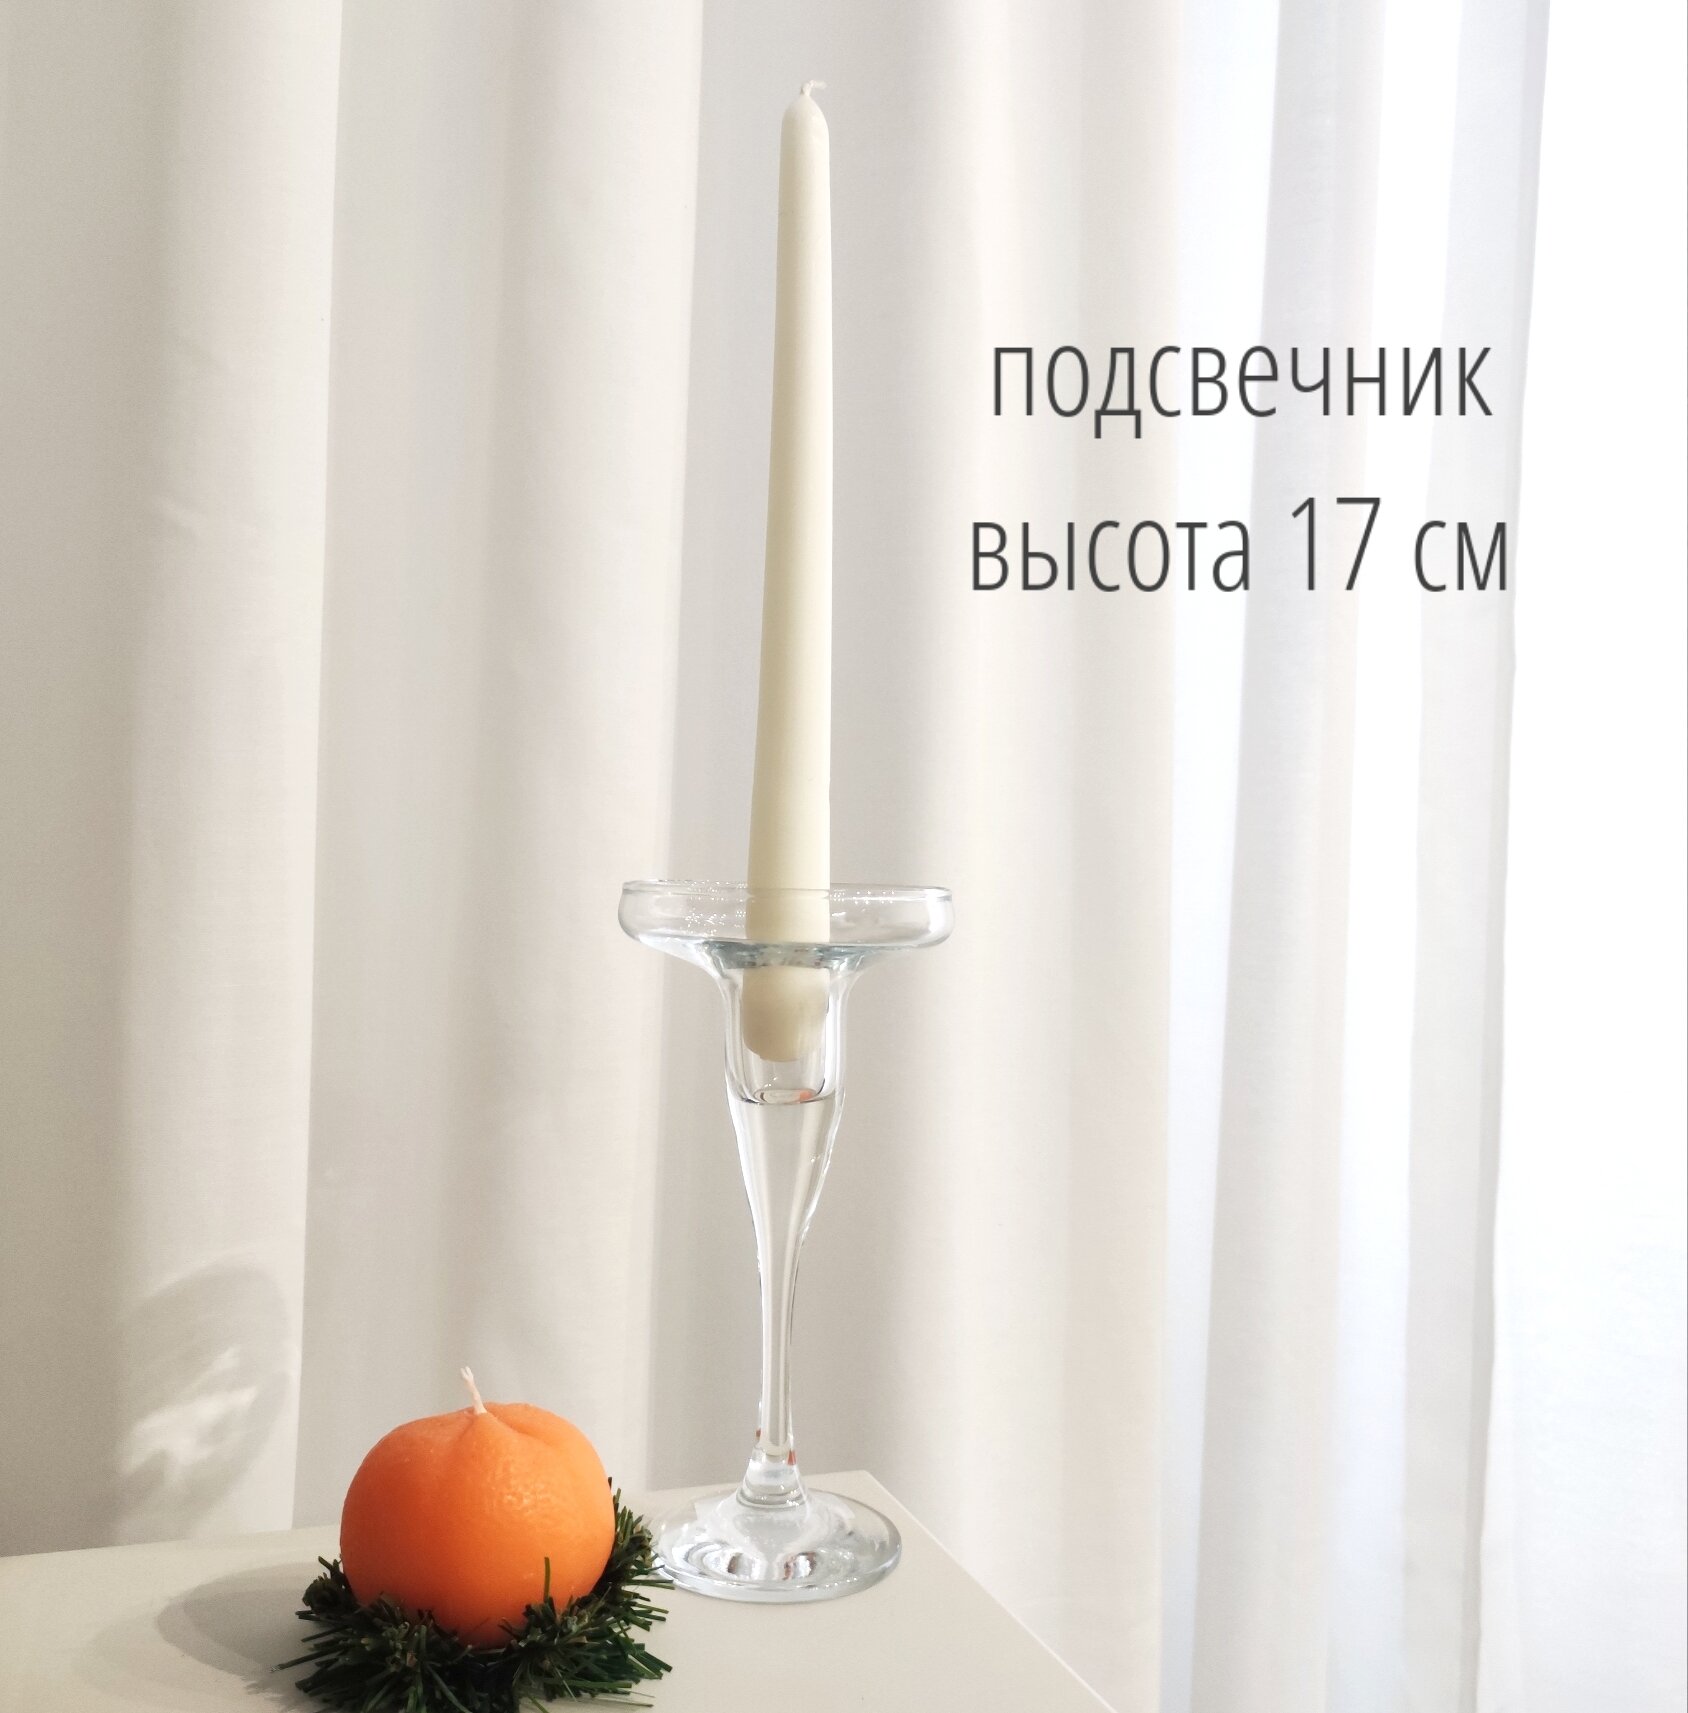 Подсвечник стеклянный 17 см для одной свечи, подсвечник прозрачный для интерьера